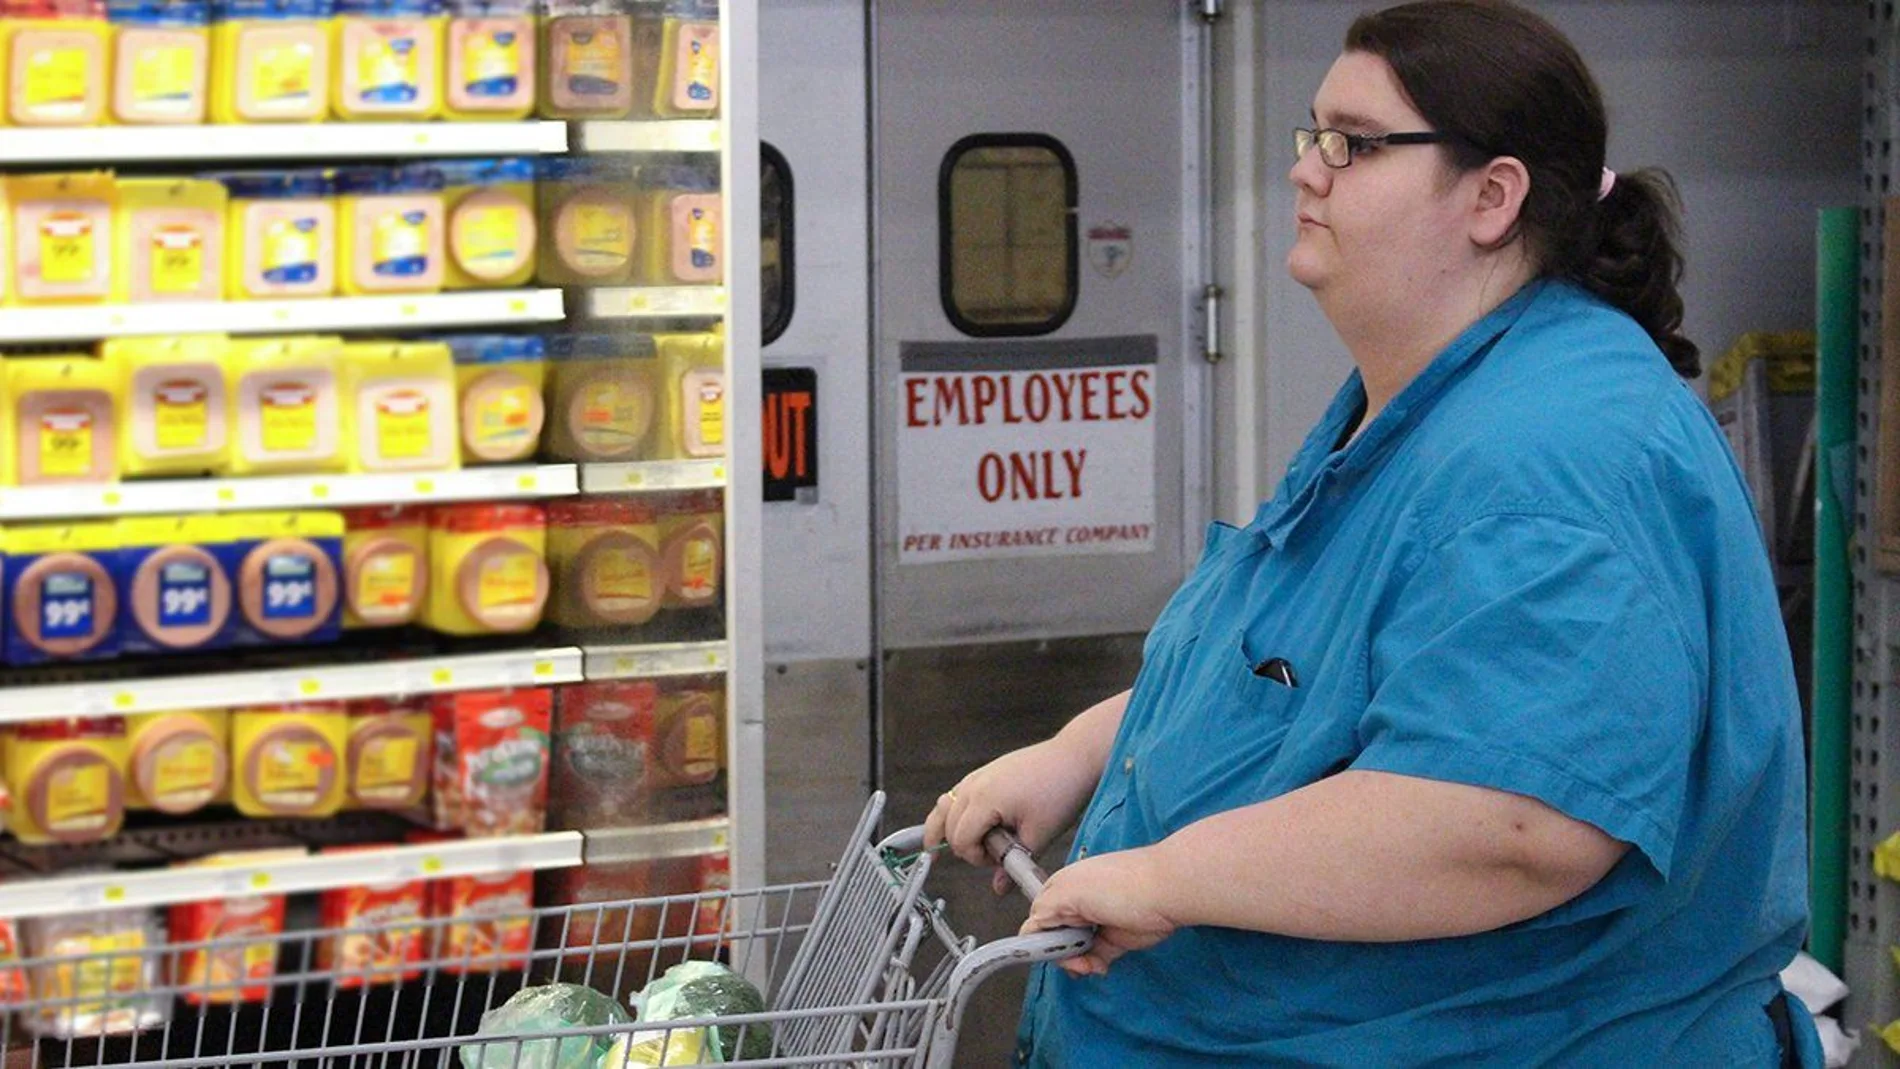 La relación de obesidad y centros de trabajo es cada vez más clara